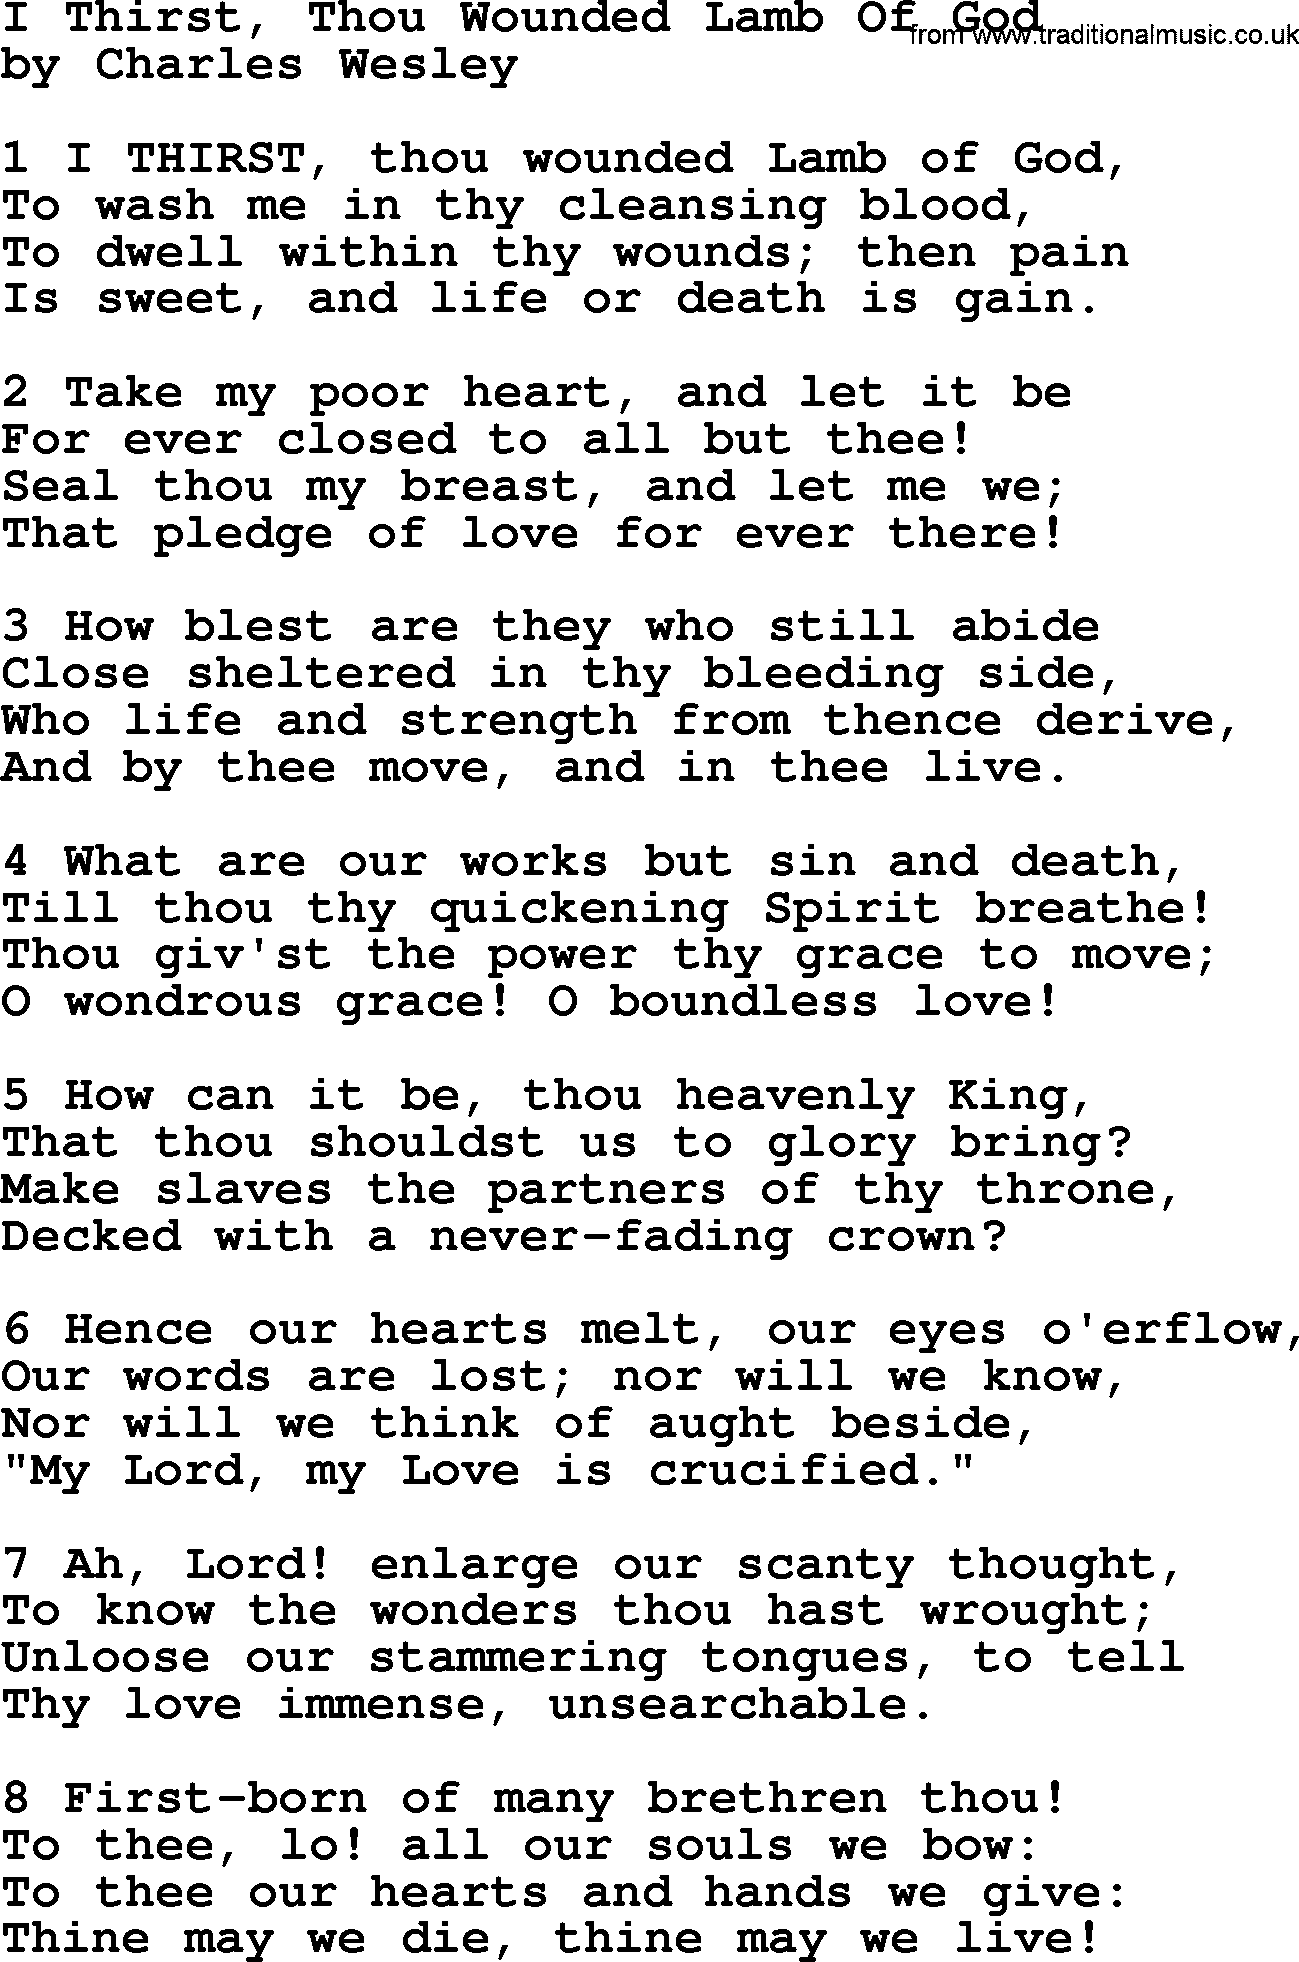 Charles Wesley hymn: I Thirst, Thou Wounded Lamb Of God, lyrics